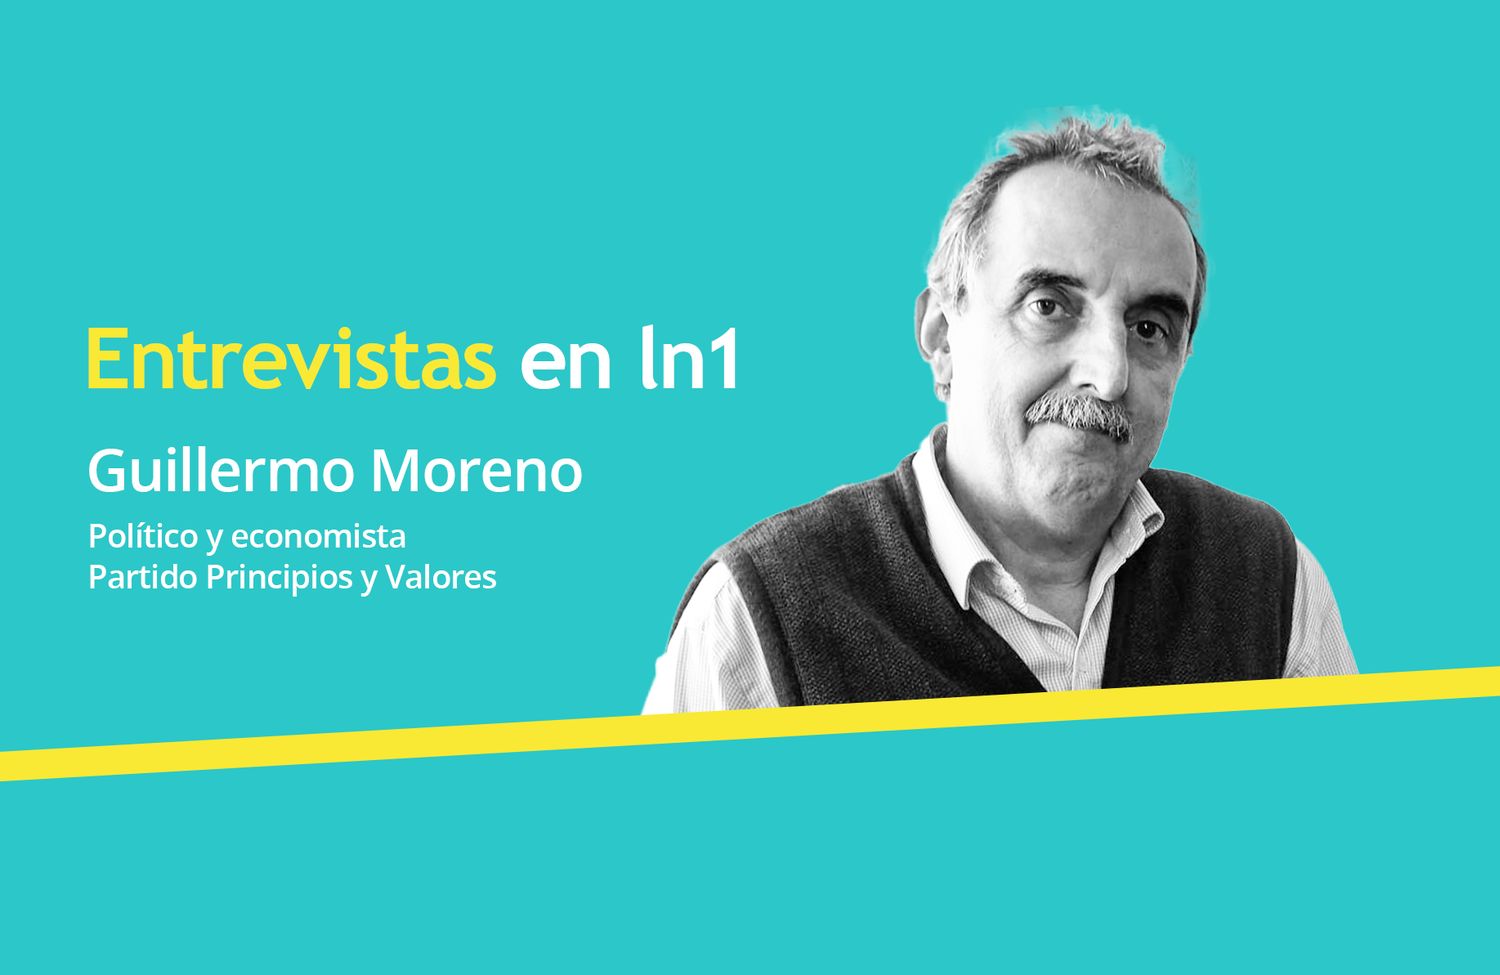 Guillermo Moreno: "El equipo de Cristina se terminó cuando decidió poner las manos en el fuego sólo por sus hijos"